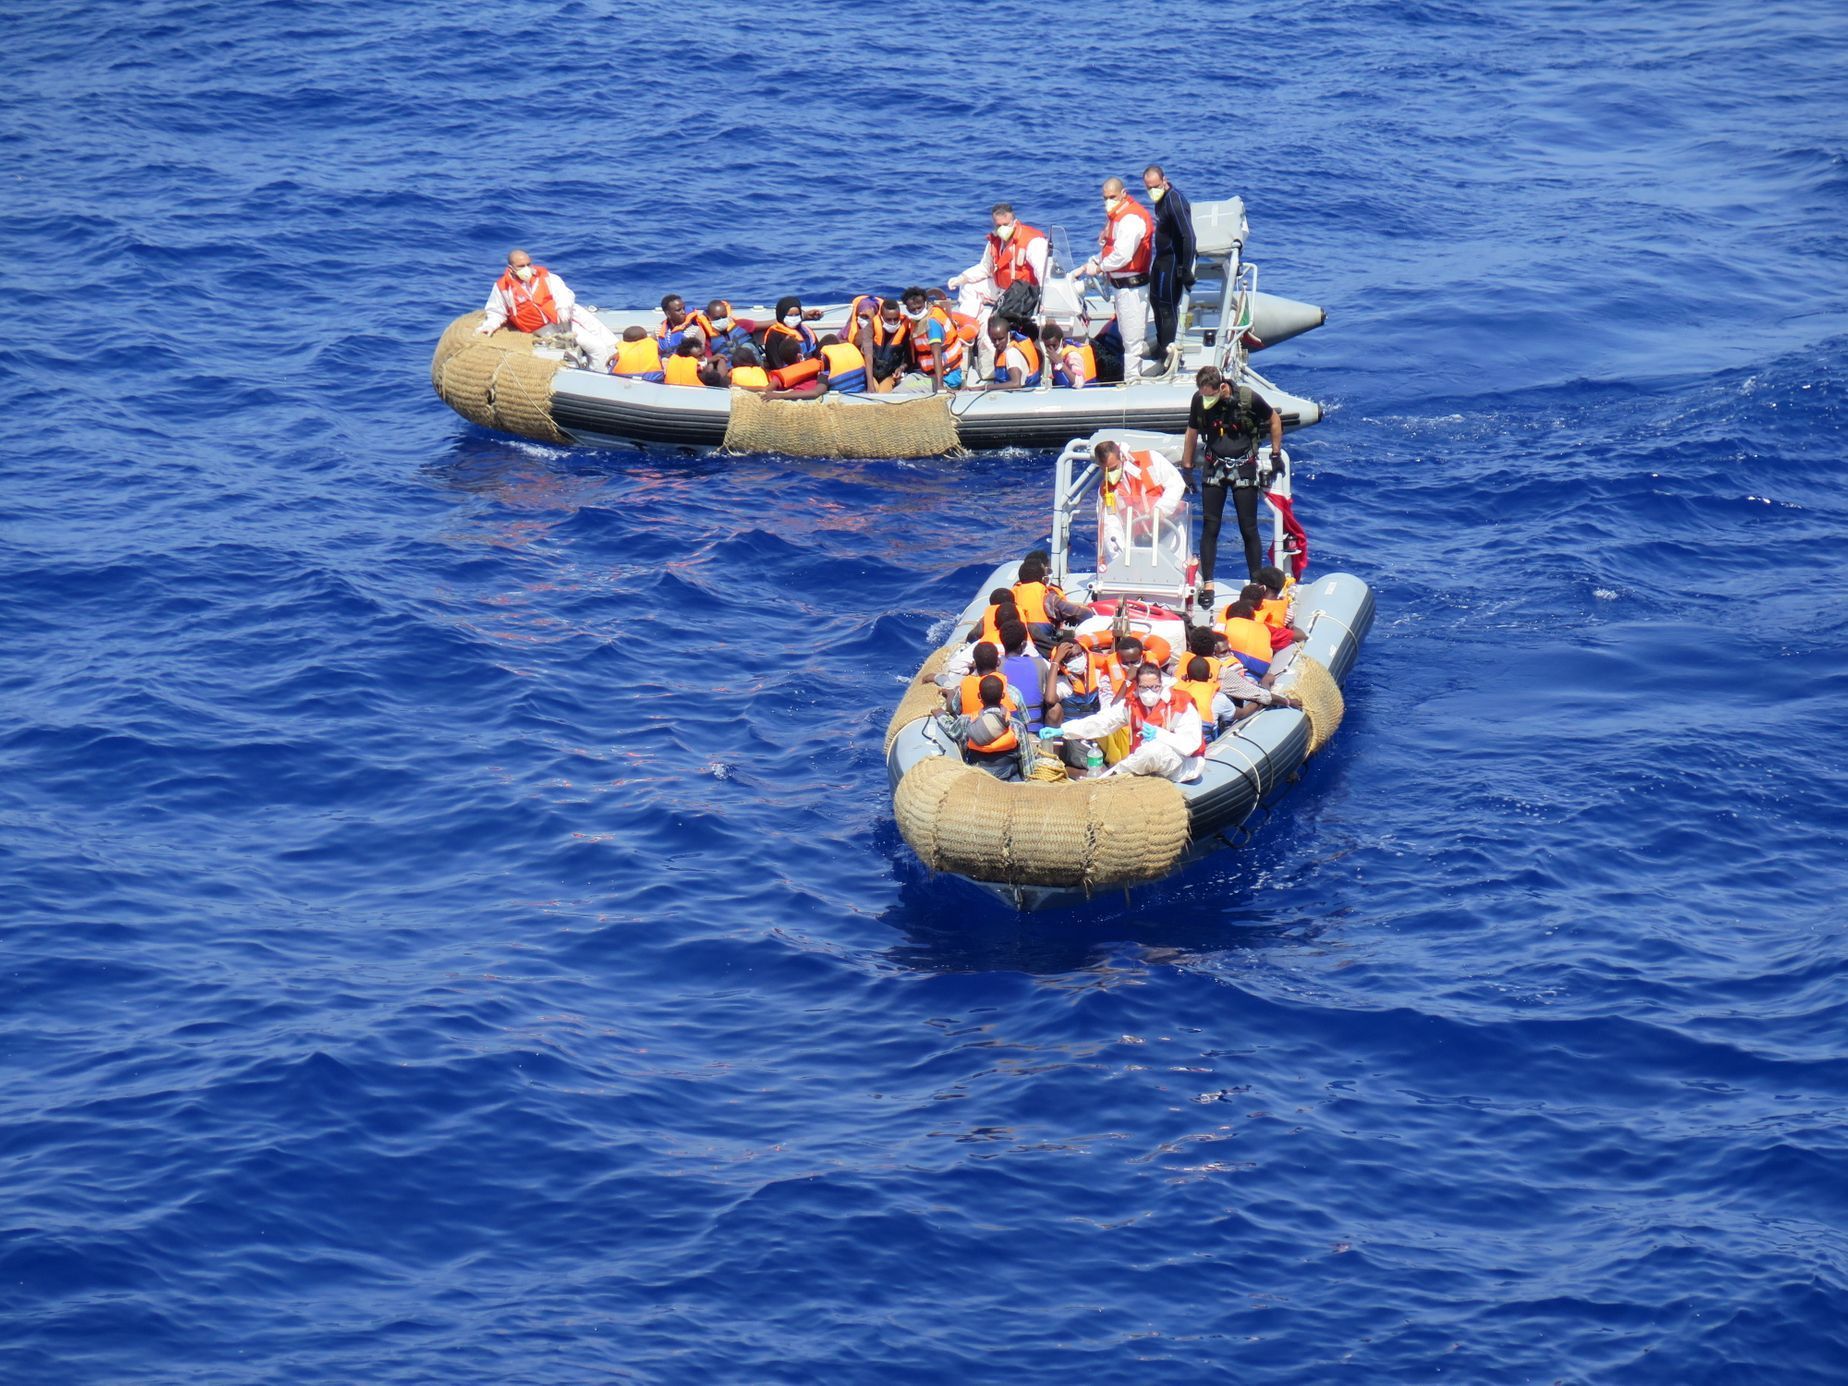 Fotky Mattea de Bellise z lodě italského námořnictva Virginio Fasan, která ve Středozemním moři pátrá po uprchlících.